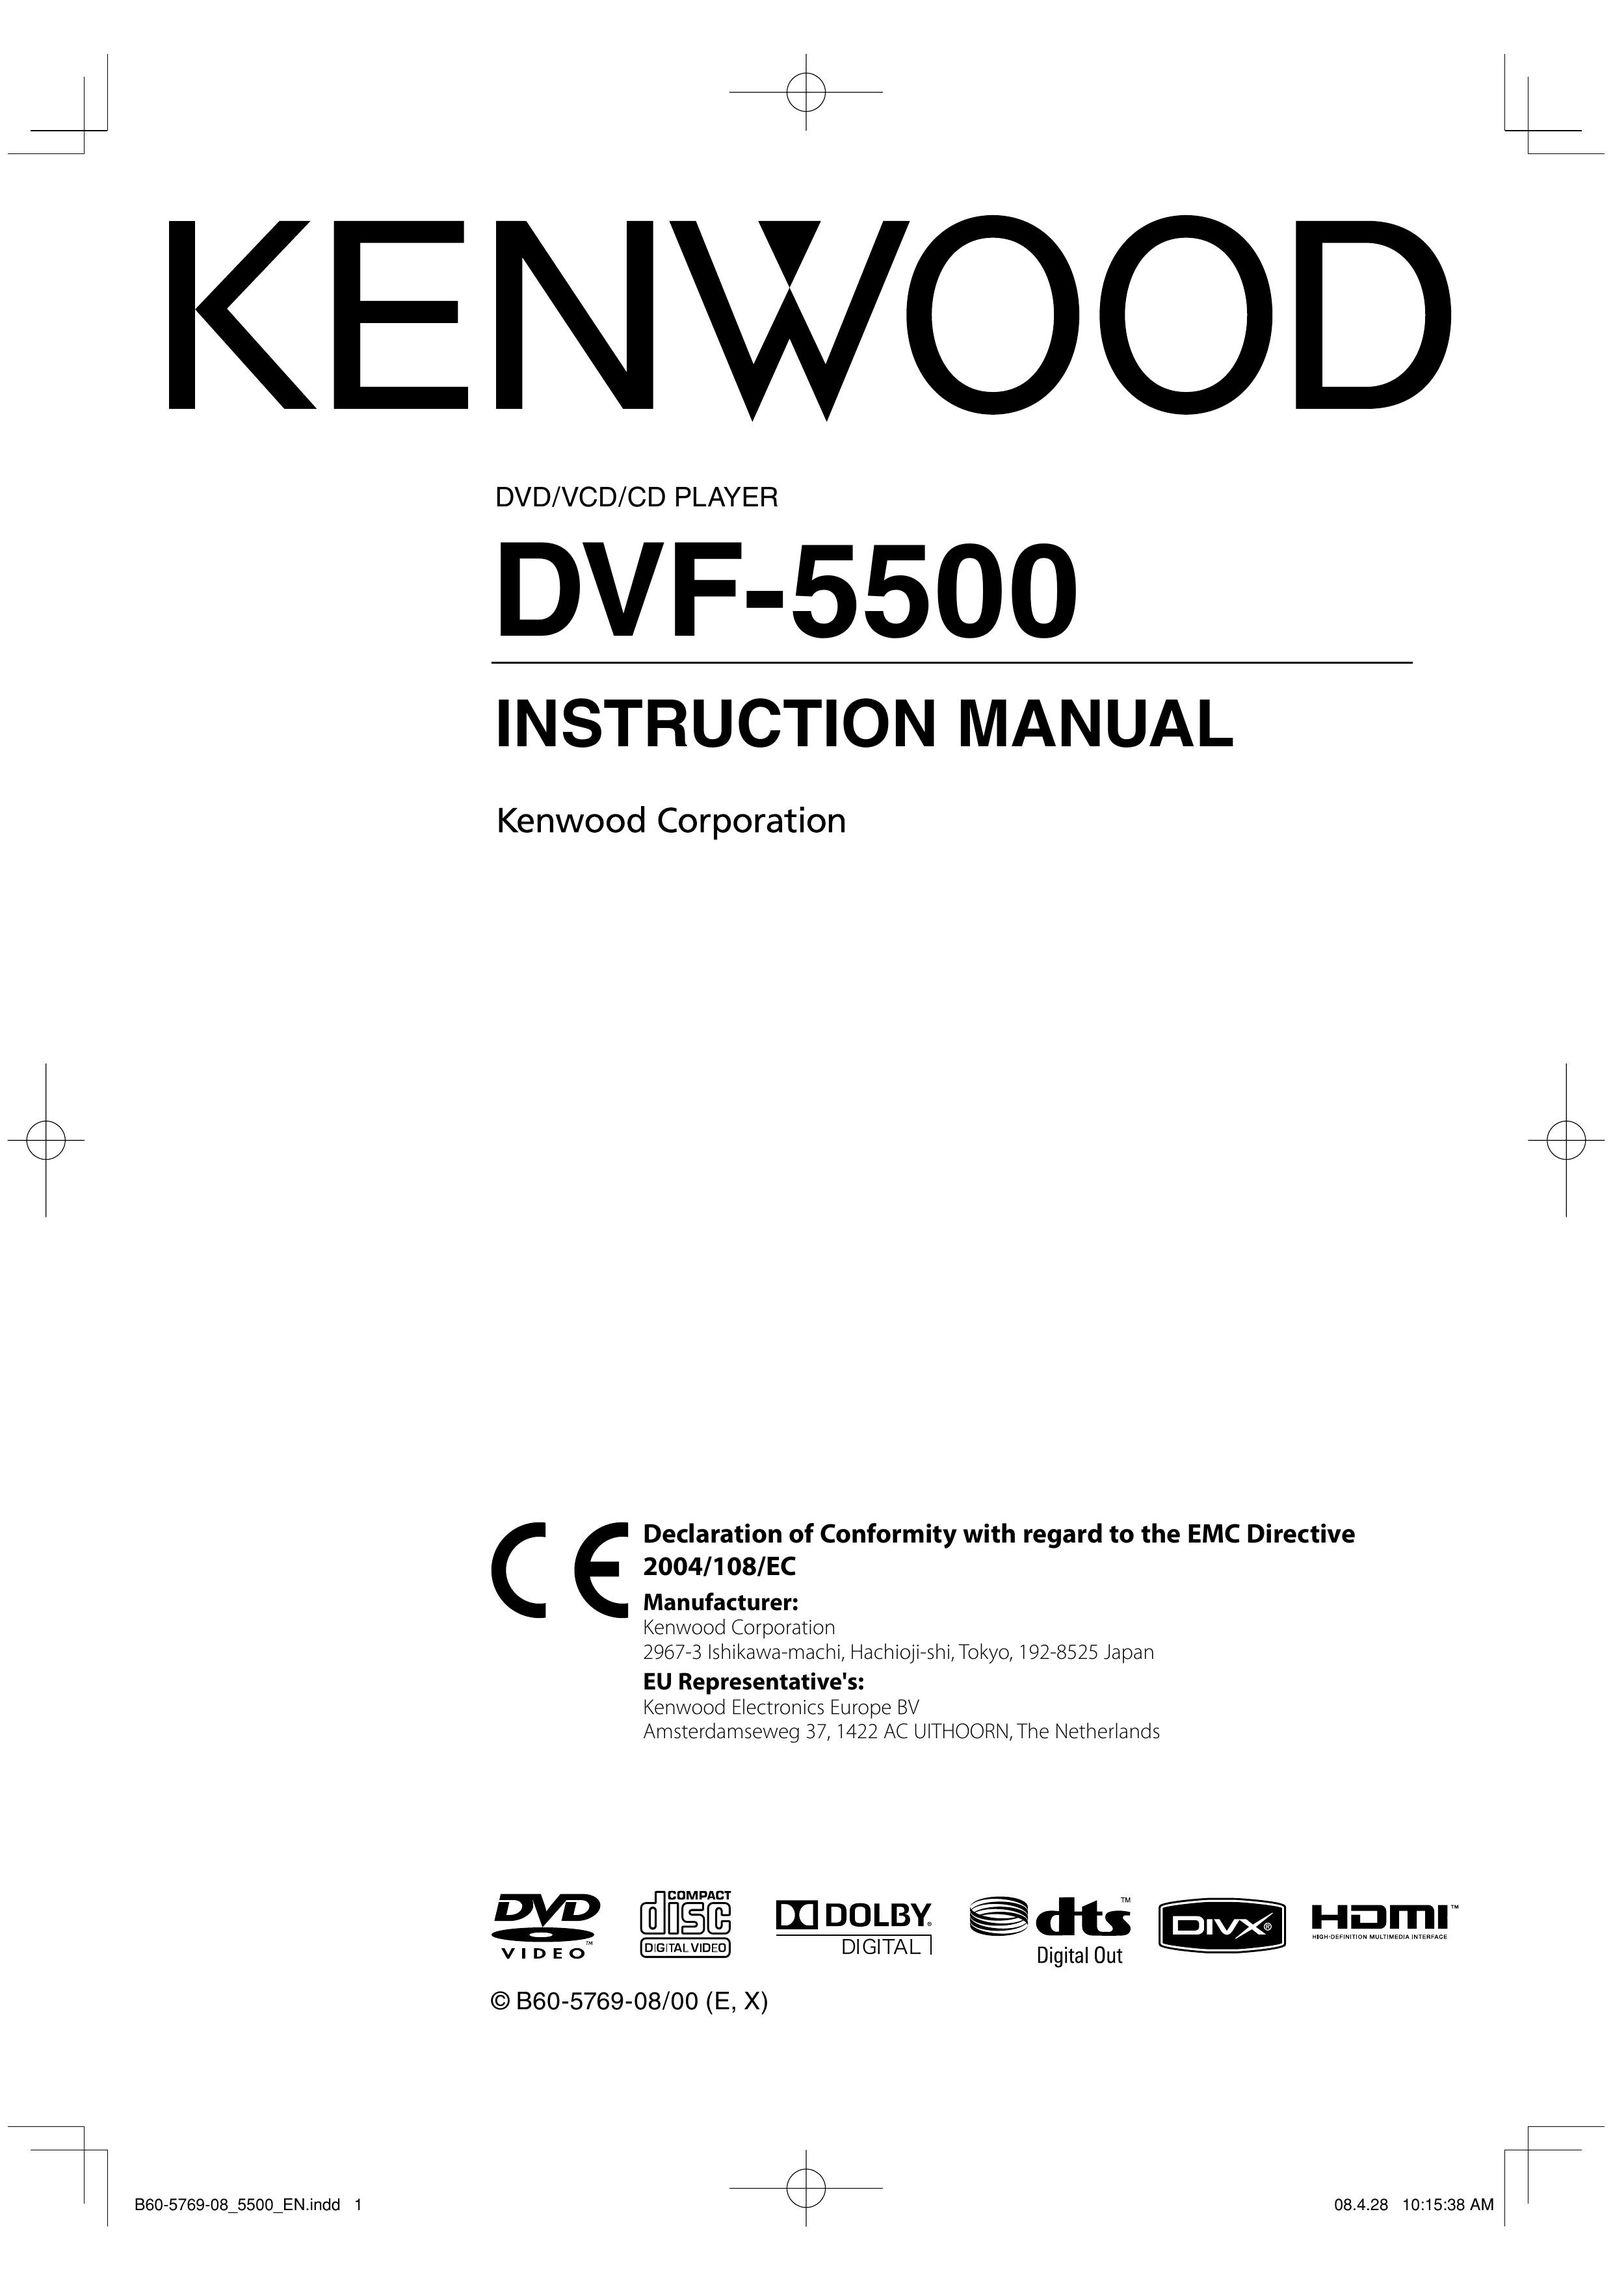 Kenwood DVF-5500 DVD Player User Manual